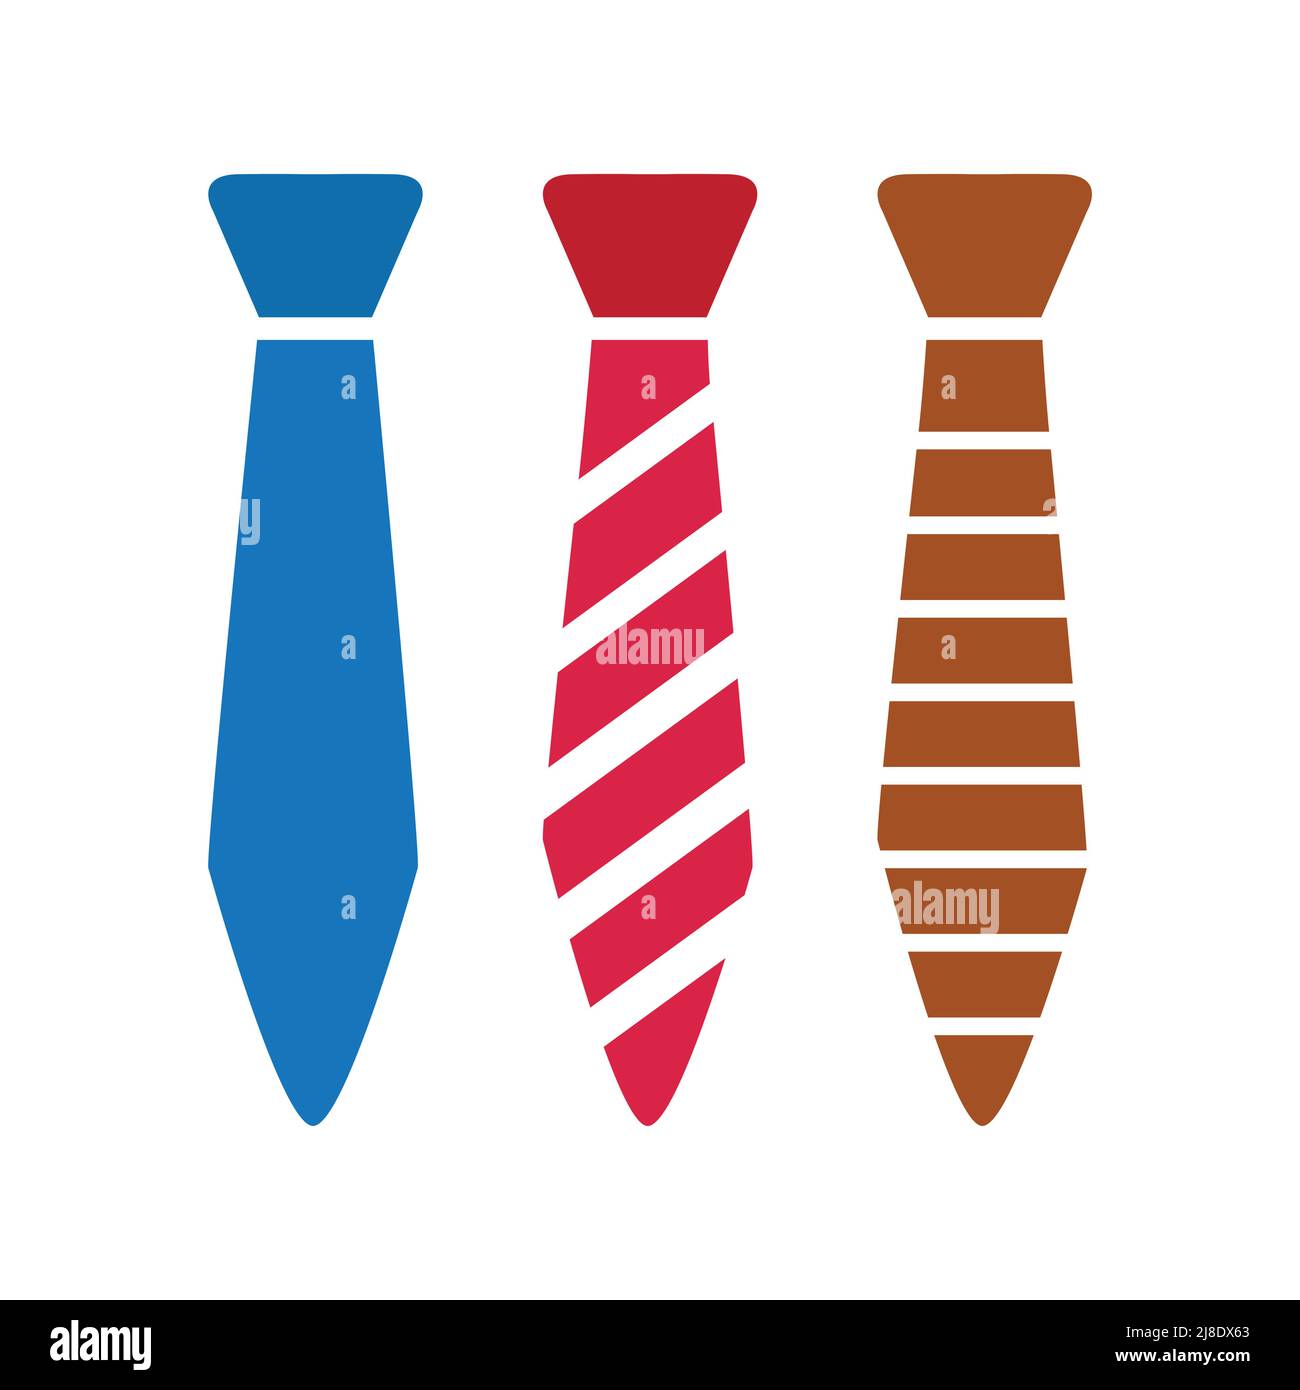 Krawatte Vektor Illustration, blau roten Streifen und braune Farbe Stock Vektor